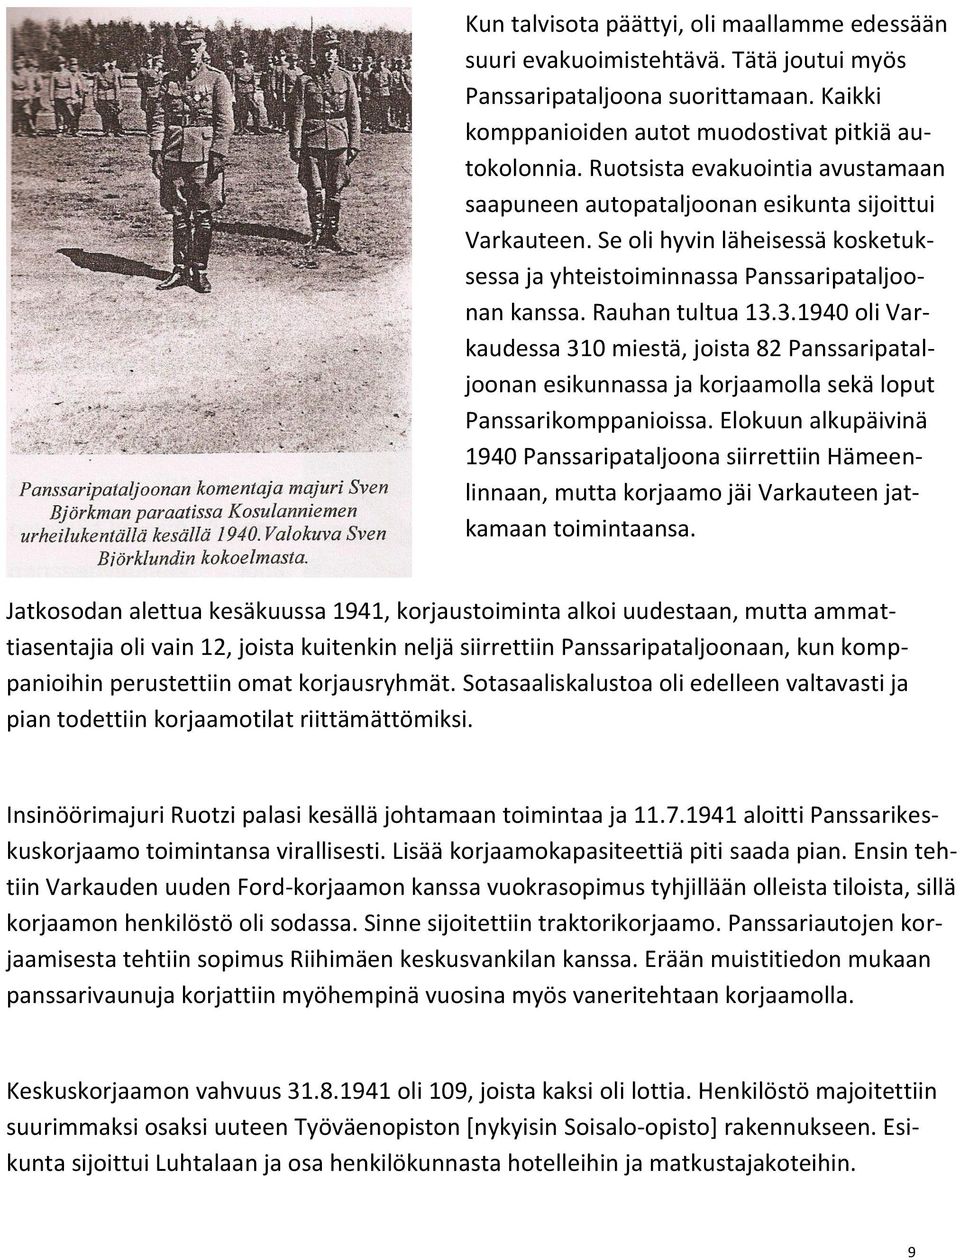 3.1940 oli Varkaudessa 310 miestä, joista 82 Panssaripataljoonan esikunnassa ja korjaamolla sekä loput Panssarikomppanioissa.